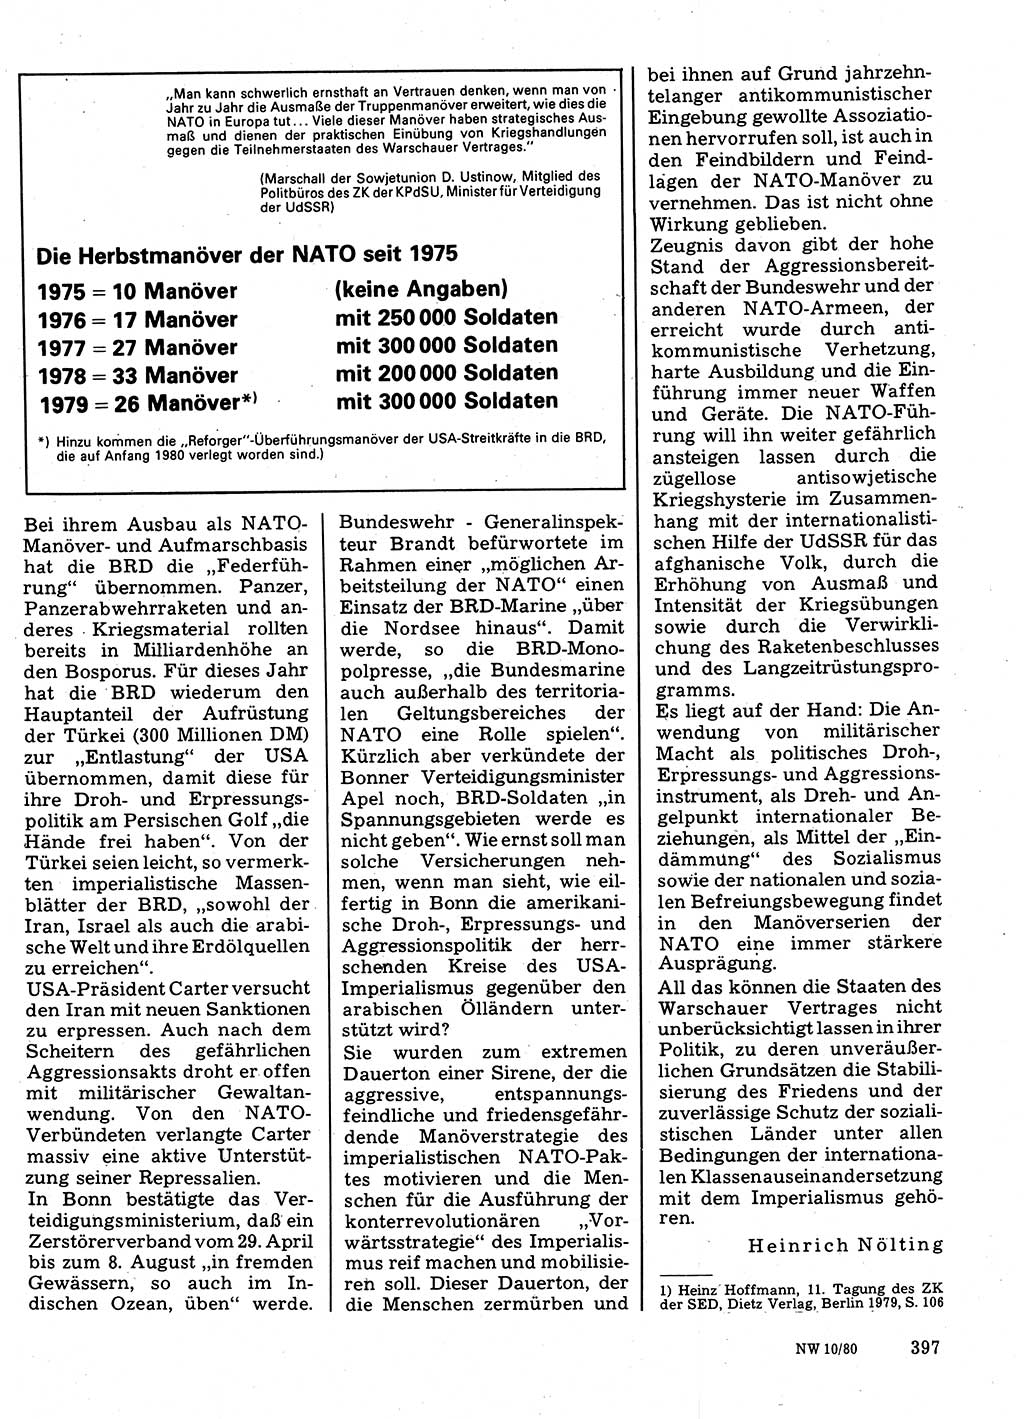 Neuer Weg (NW), Organ des Zentralkomitees (ZK) der SED (Sozialistische Einheitspartei Deutschlands) für Fragen des Parteilebens, 35. Jahrgang [Deutsche Demokratische Republik (DDR)] 1980, Seite 397 (NW ZK SED DDR 1980, S. 397)